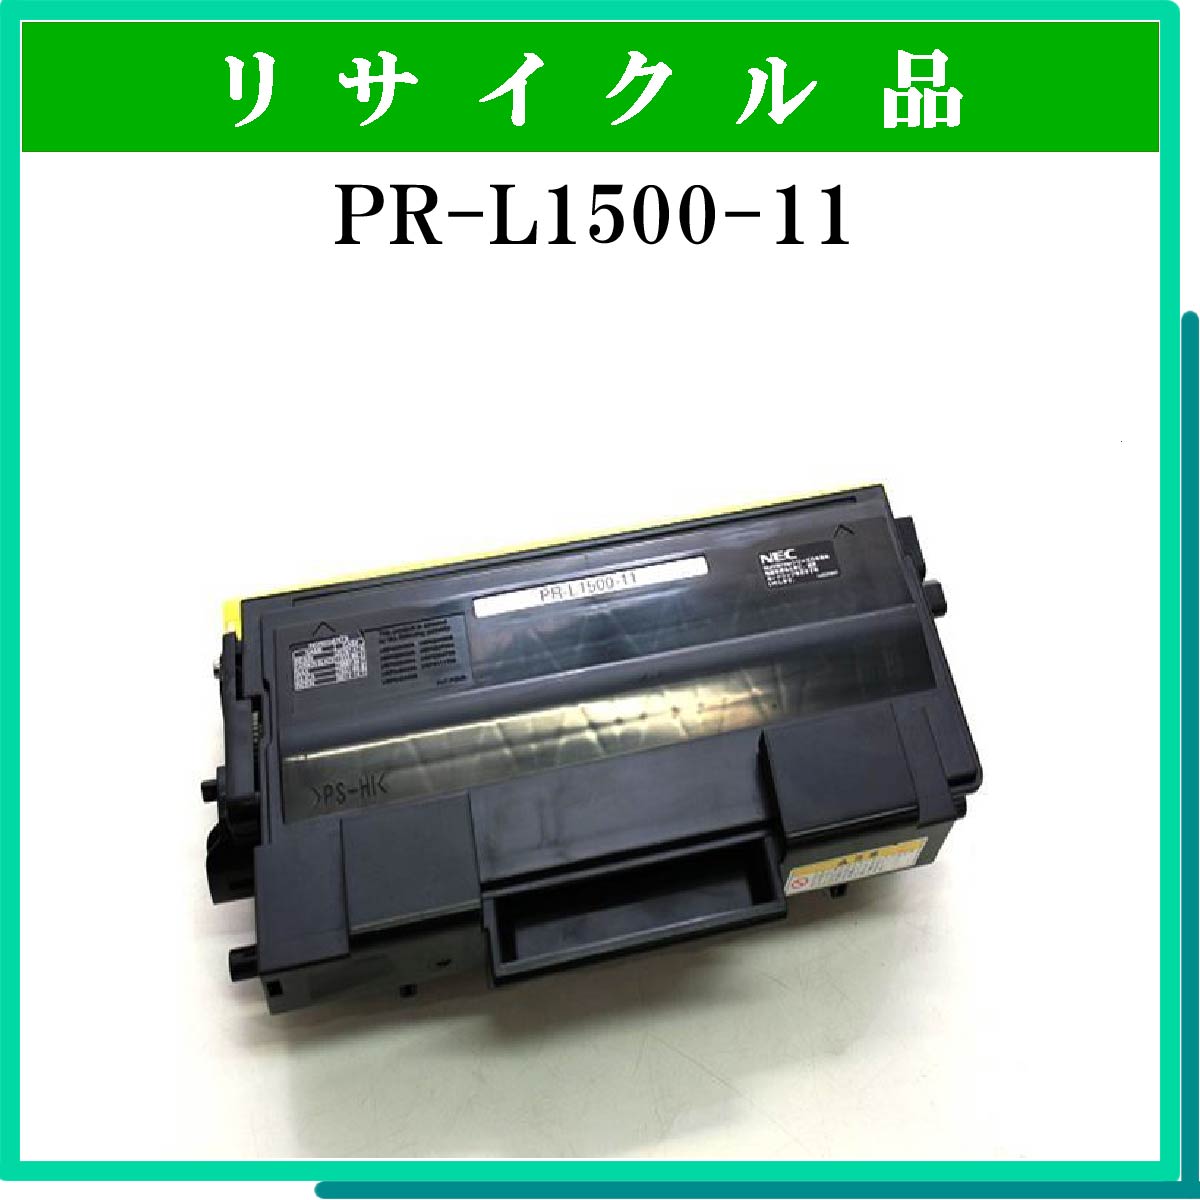 PR-L1500-11